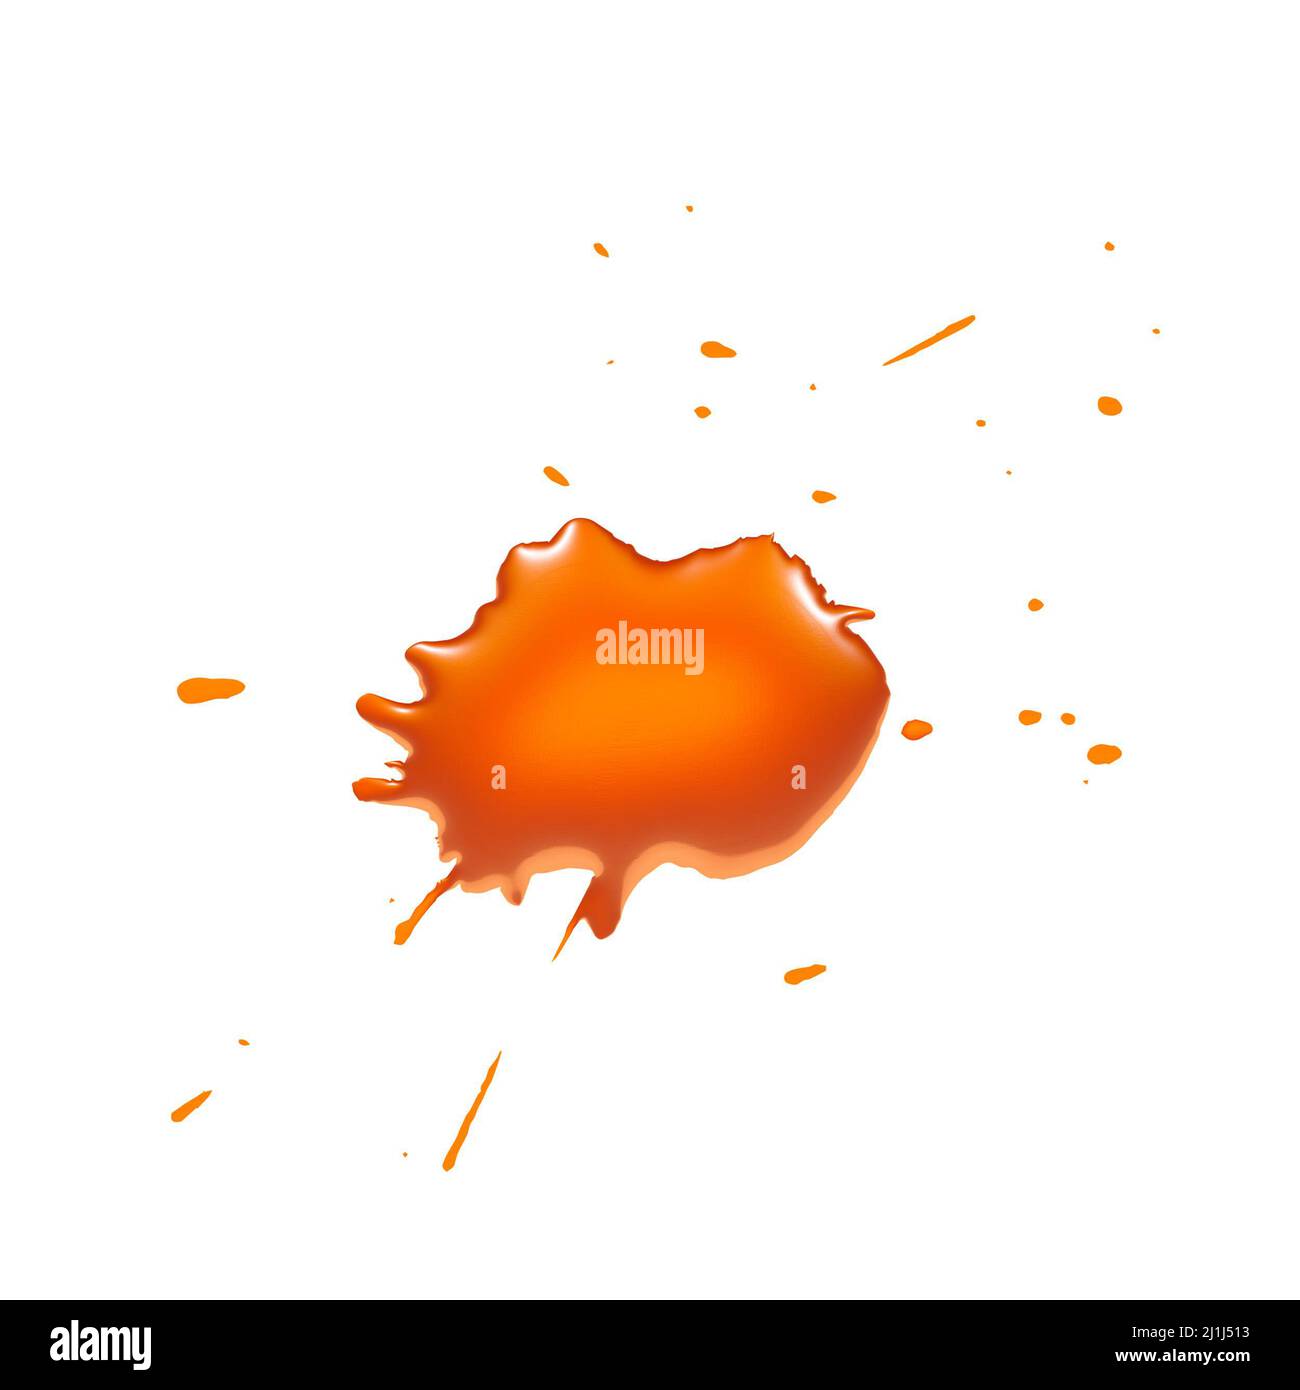 inchiostro arancione, illustrazione 3d su sfondo bianco Foto Stock